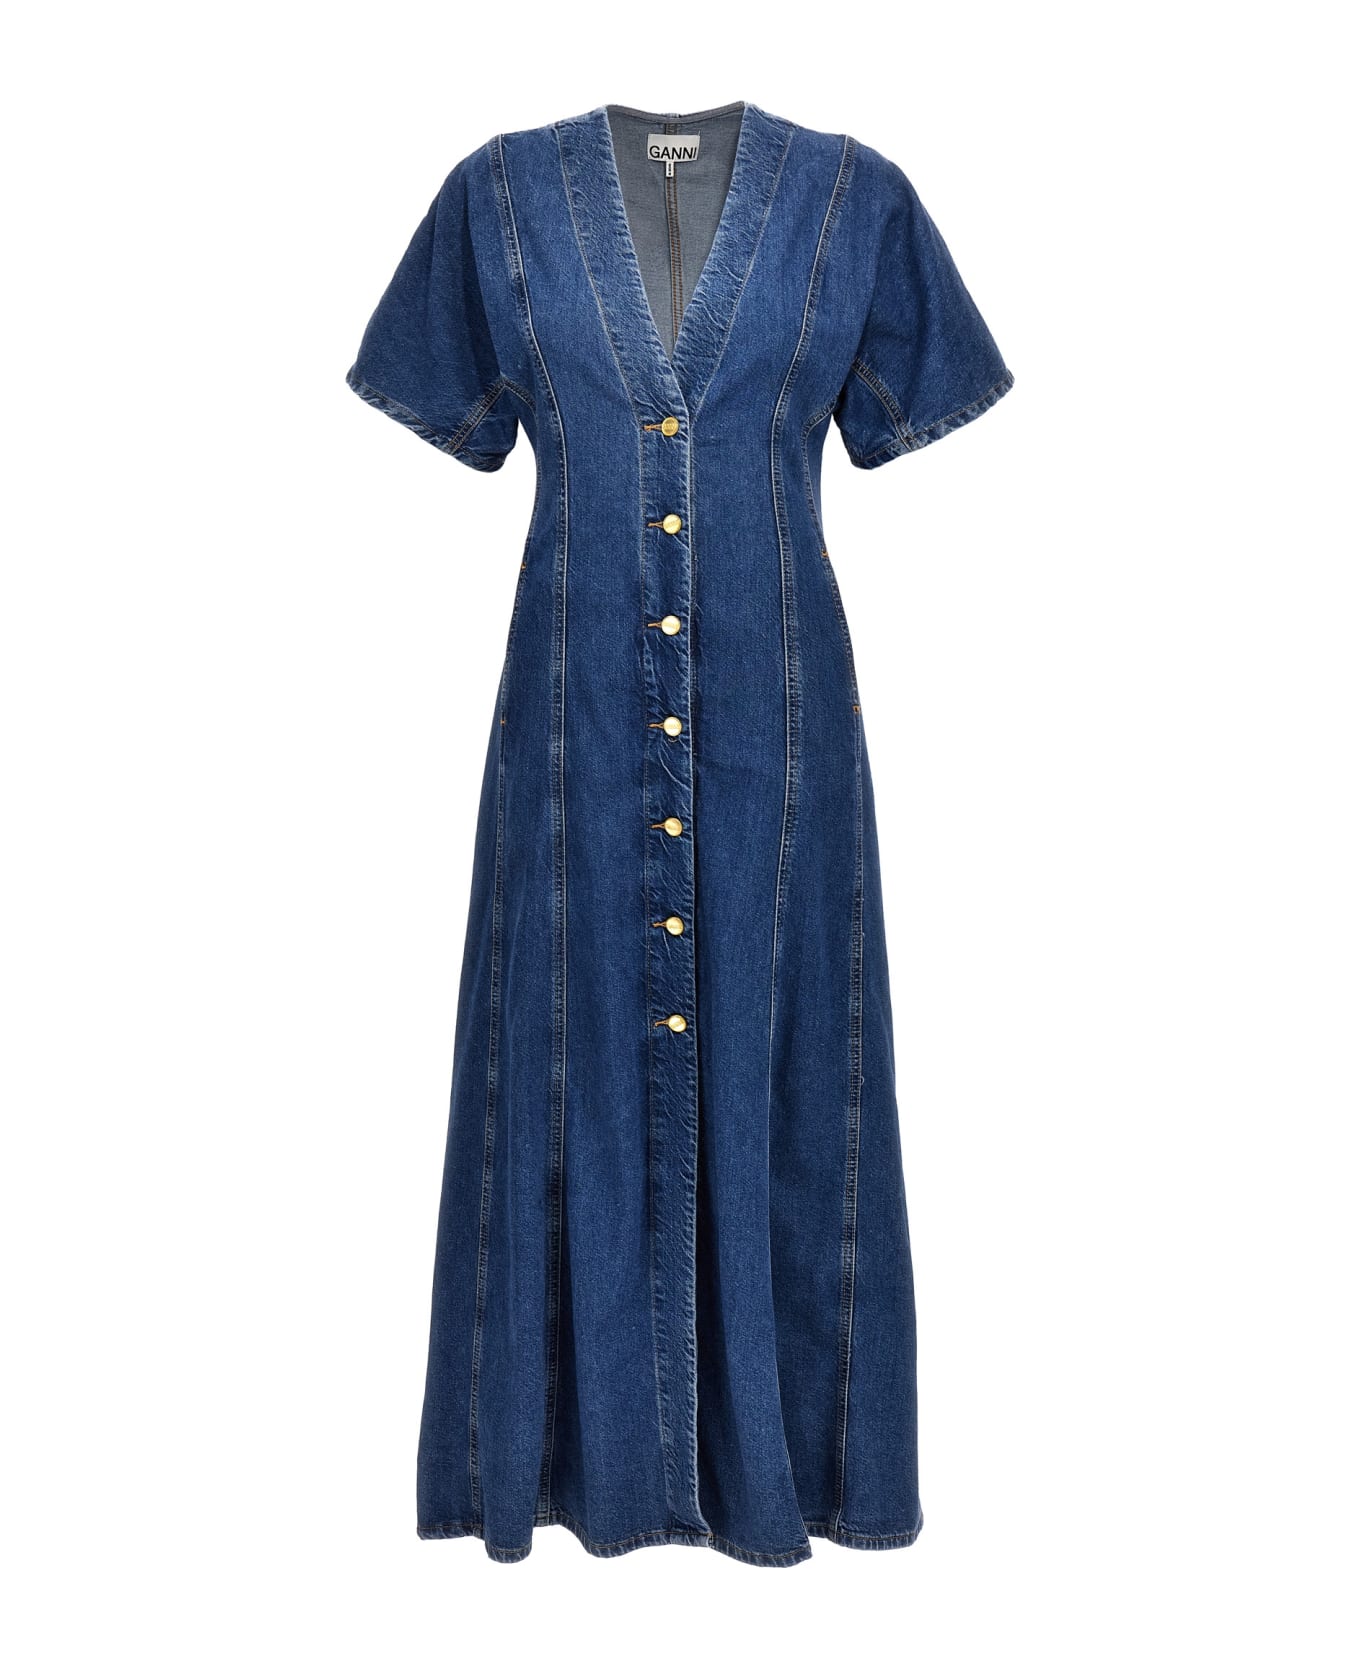 Ganni Maxi Denim Dress - Mid Blue Stone